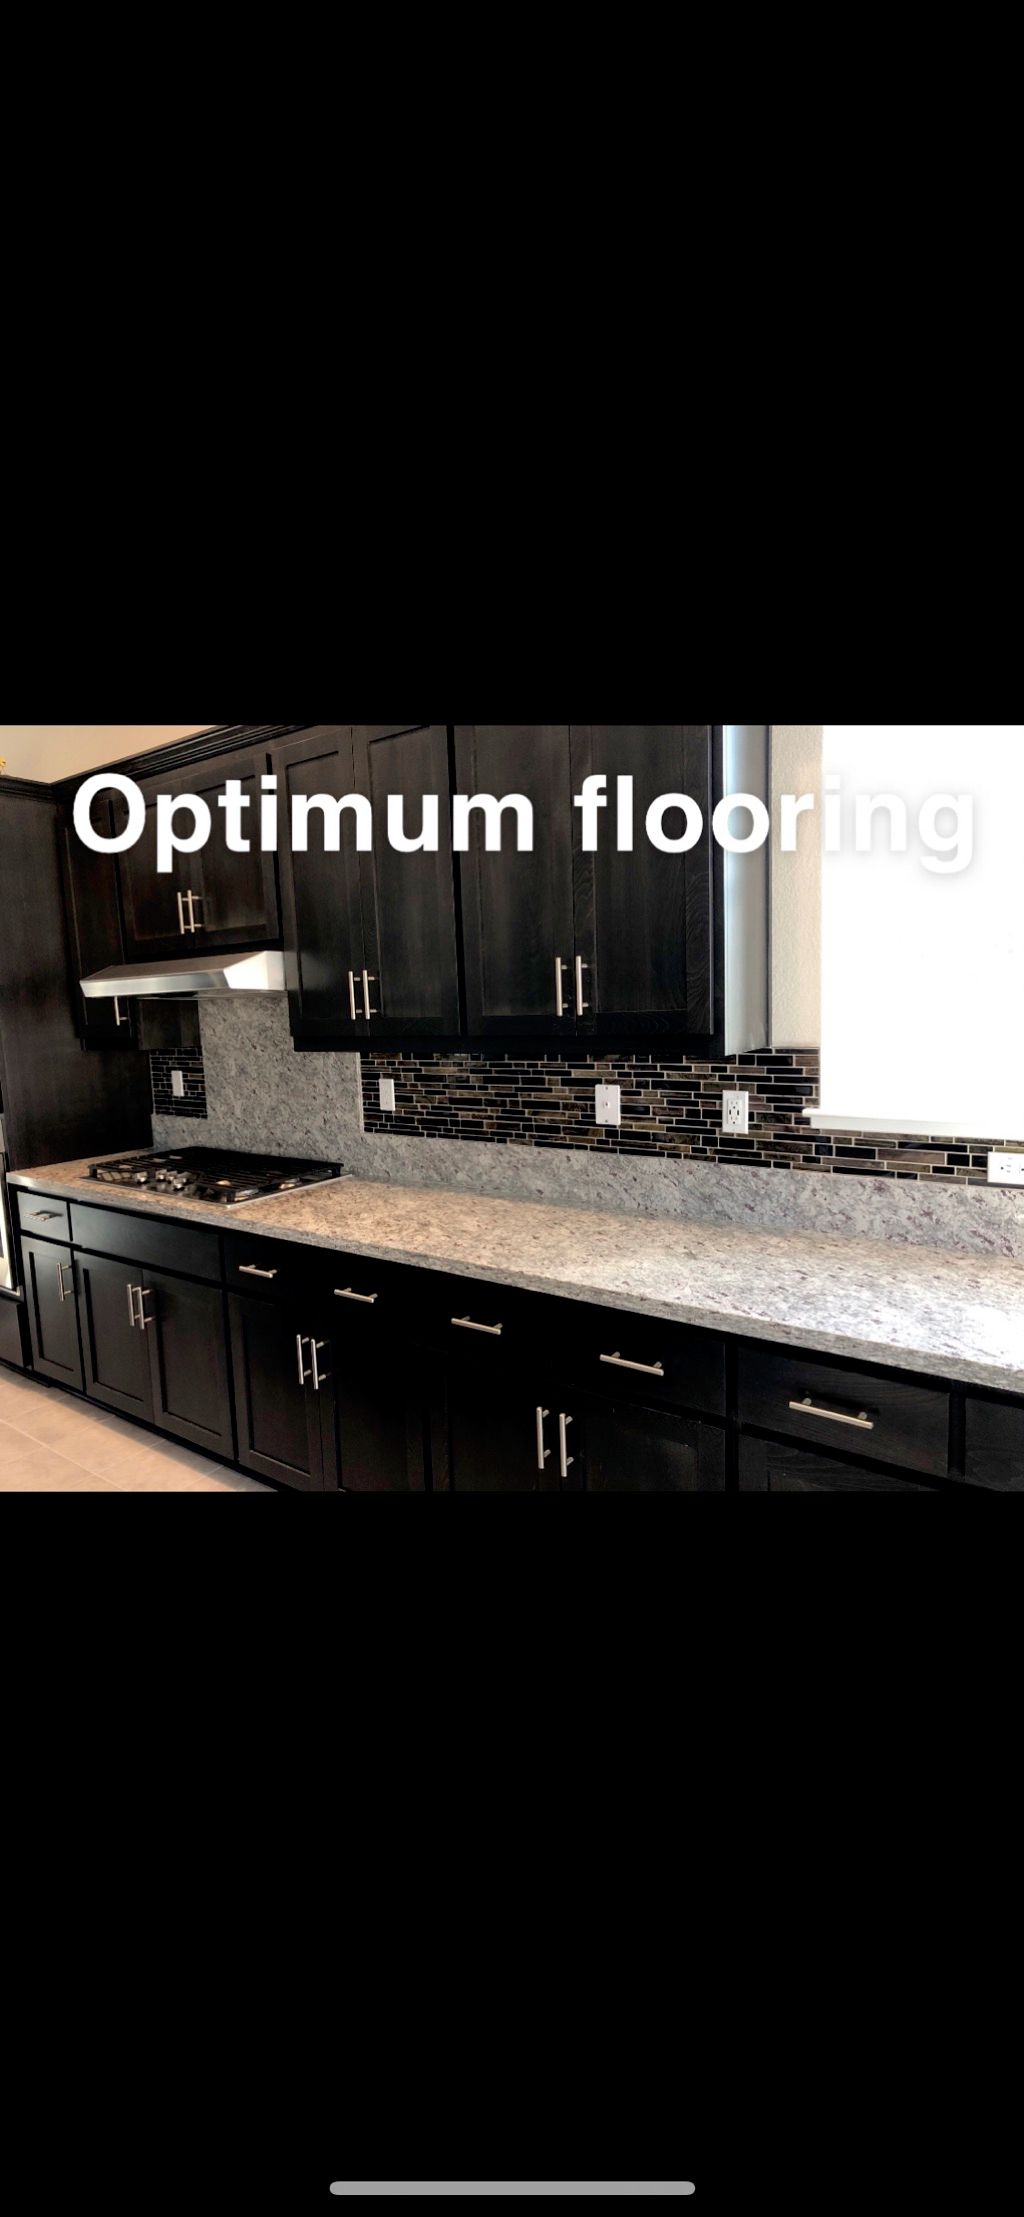 Optimum flooring